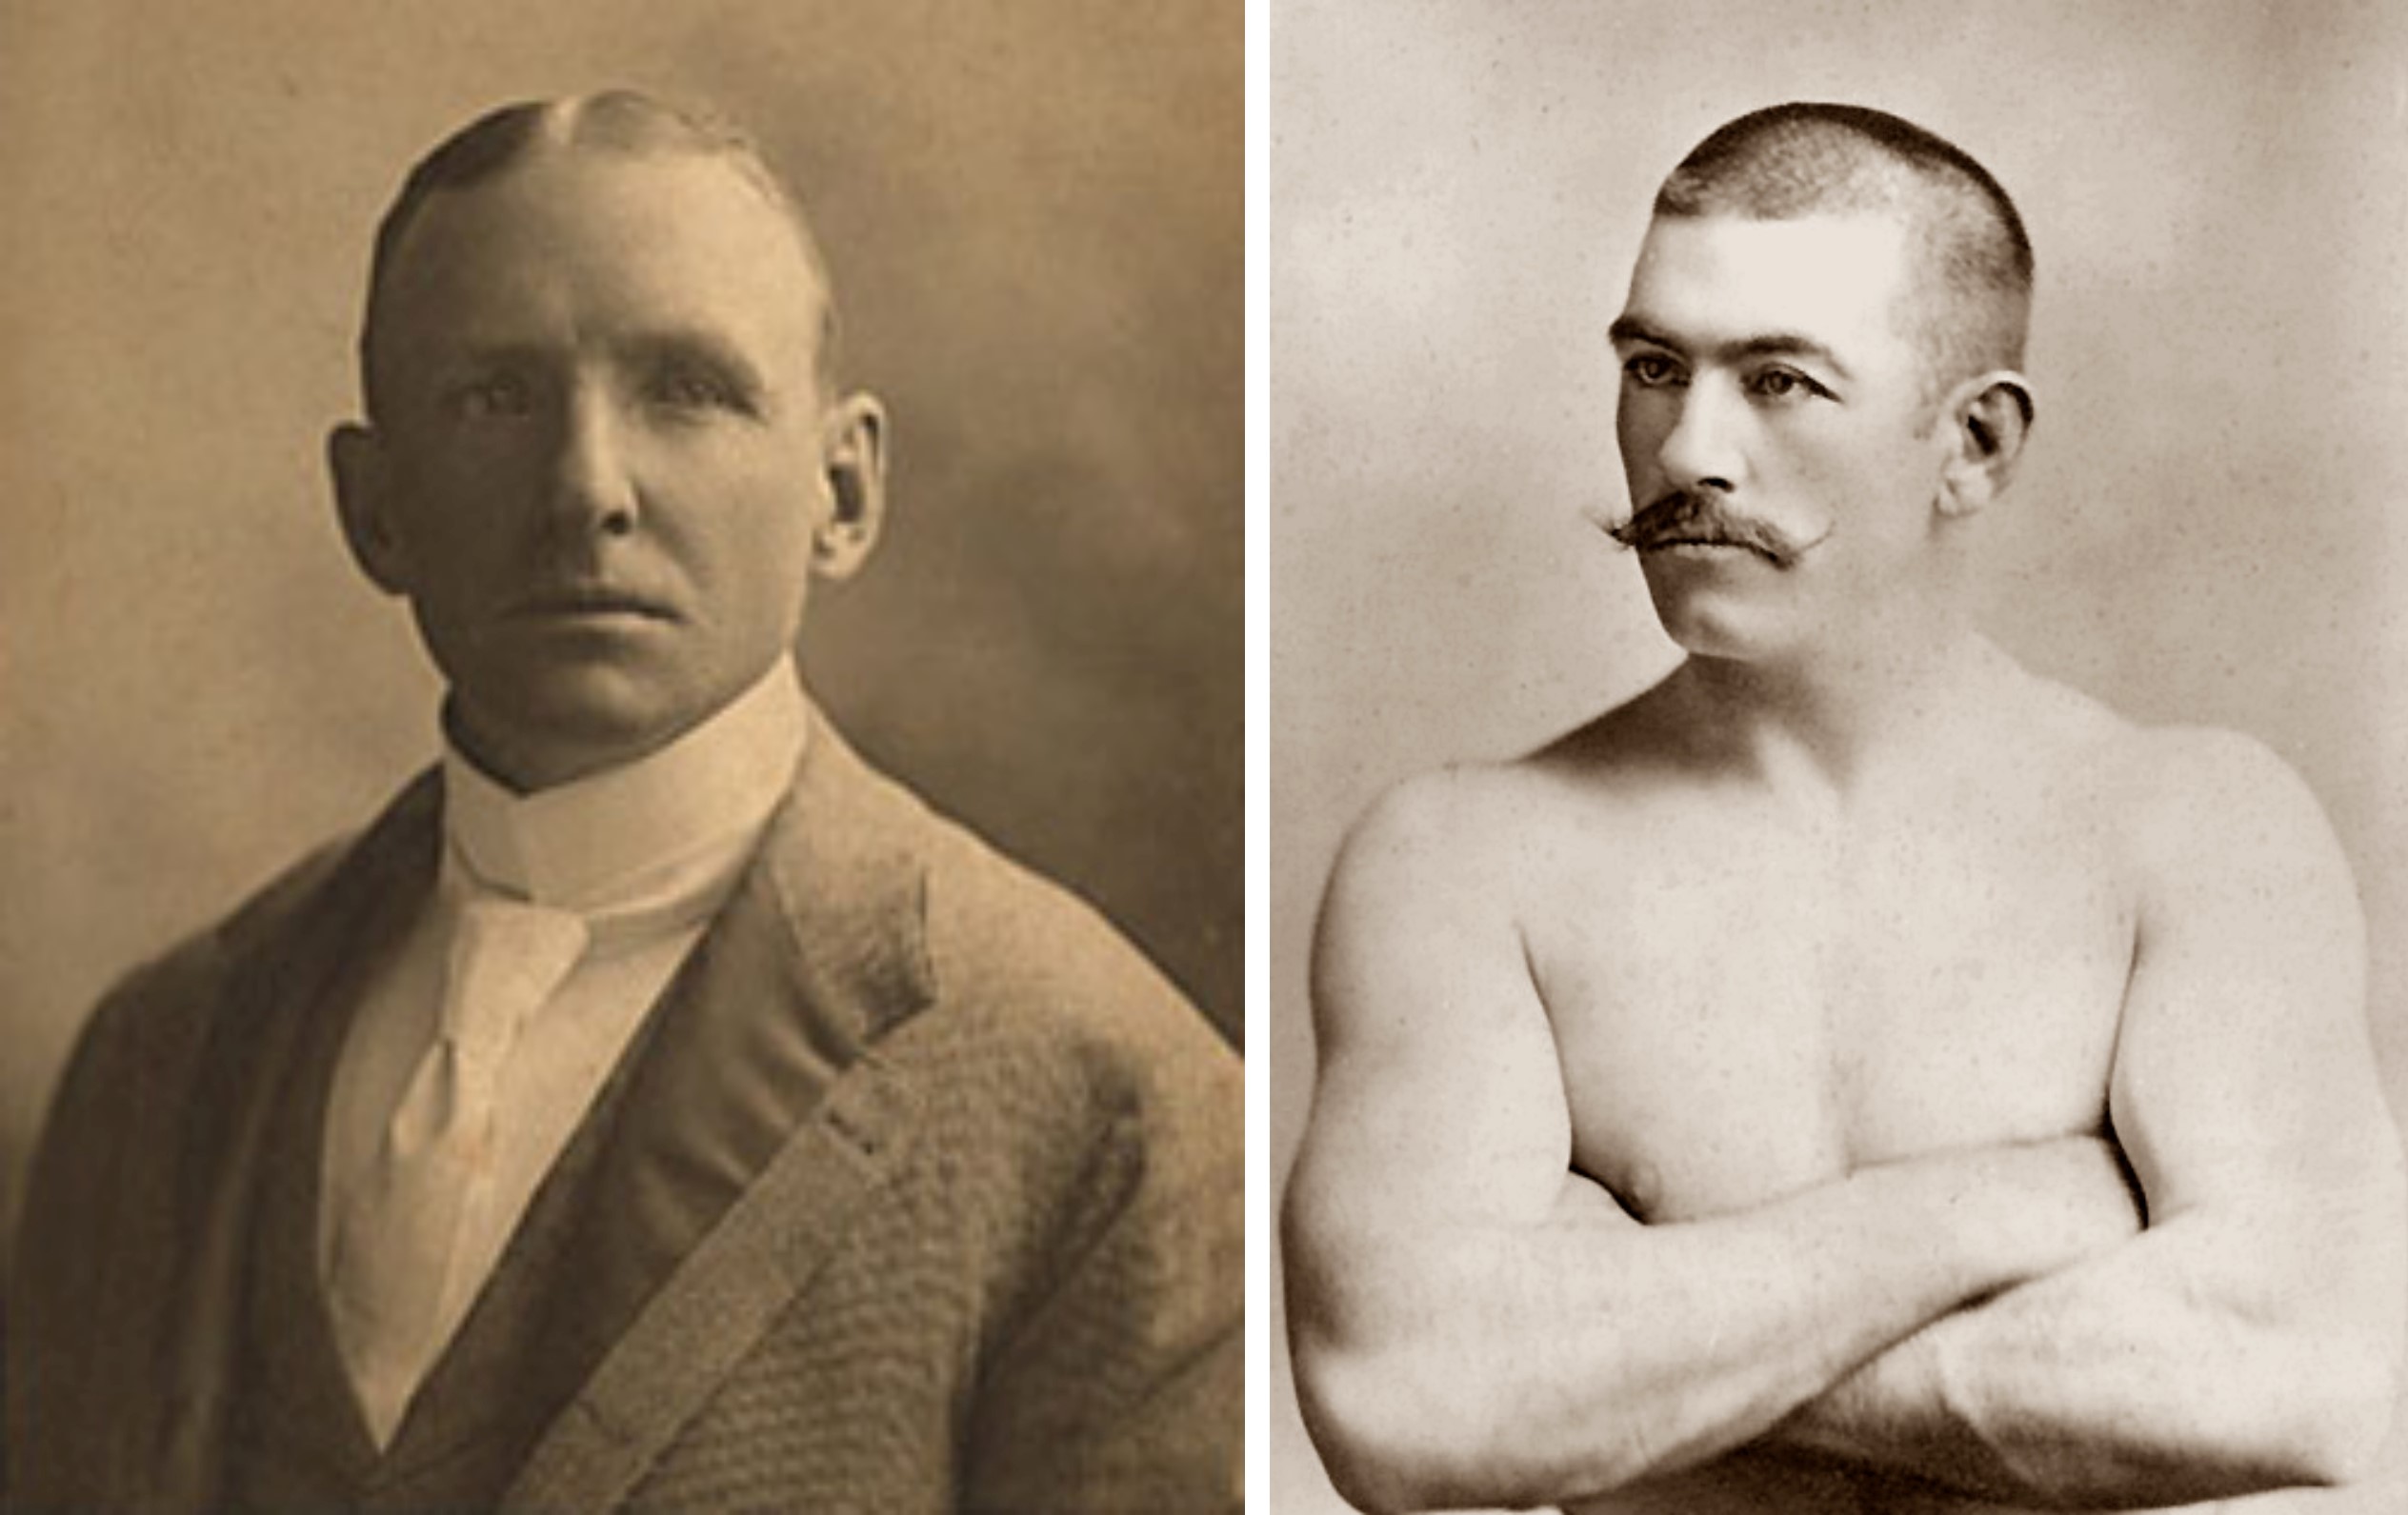 On the left, Adrian 'Cap' Anson. On the right, John L. Sullivan.